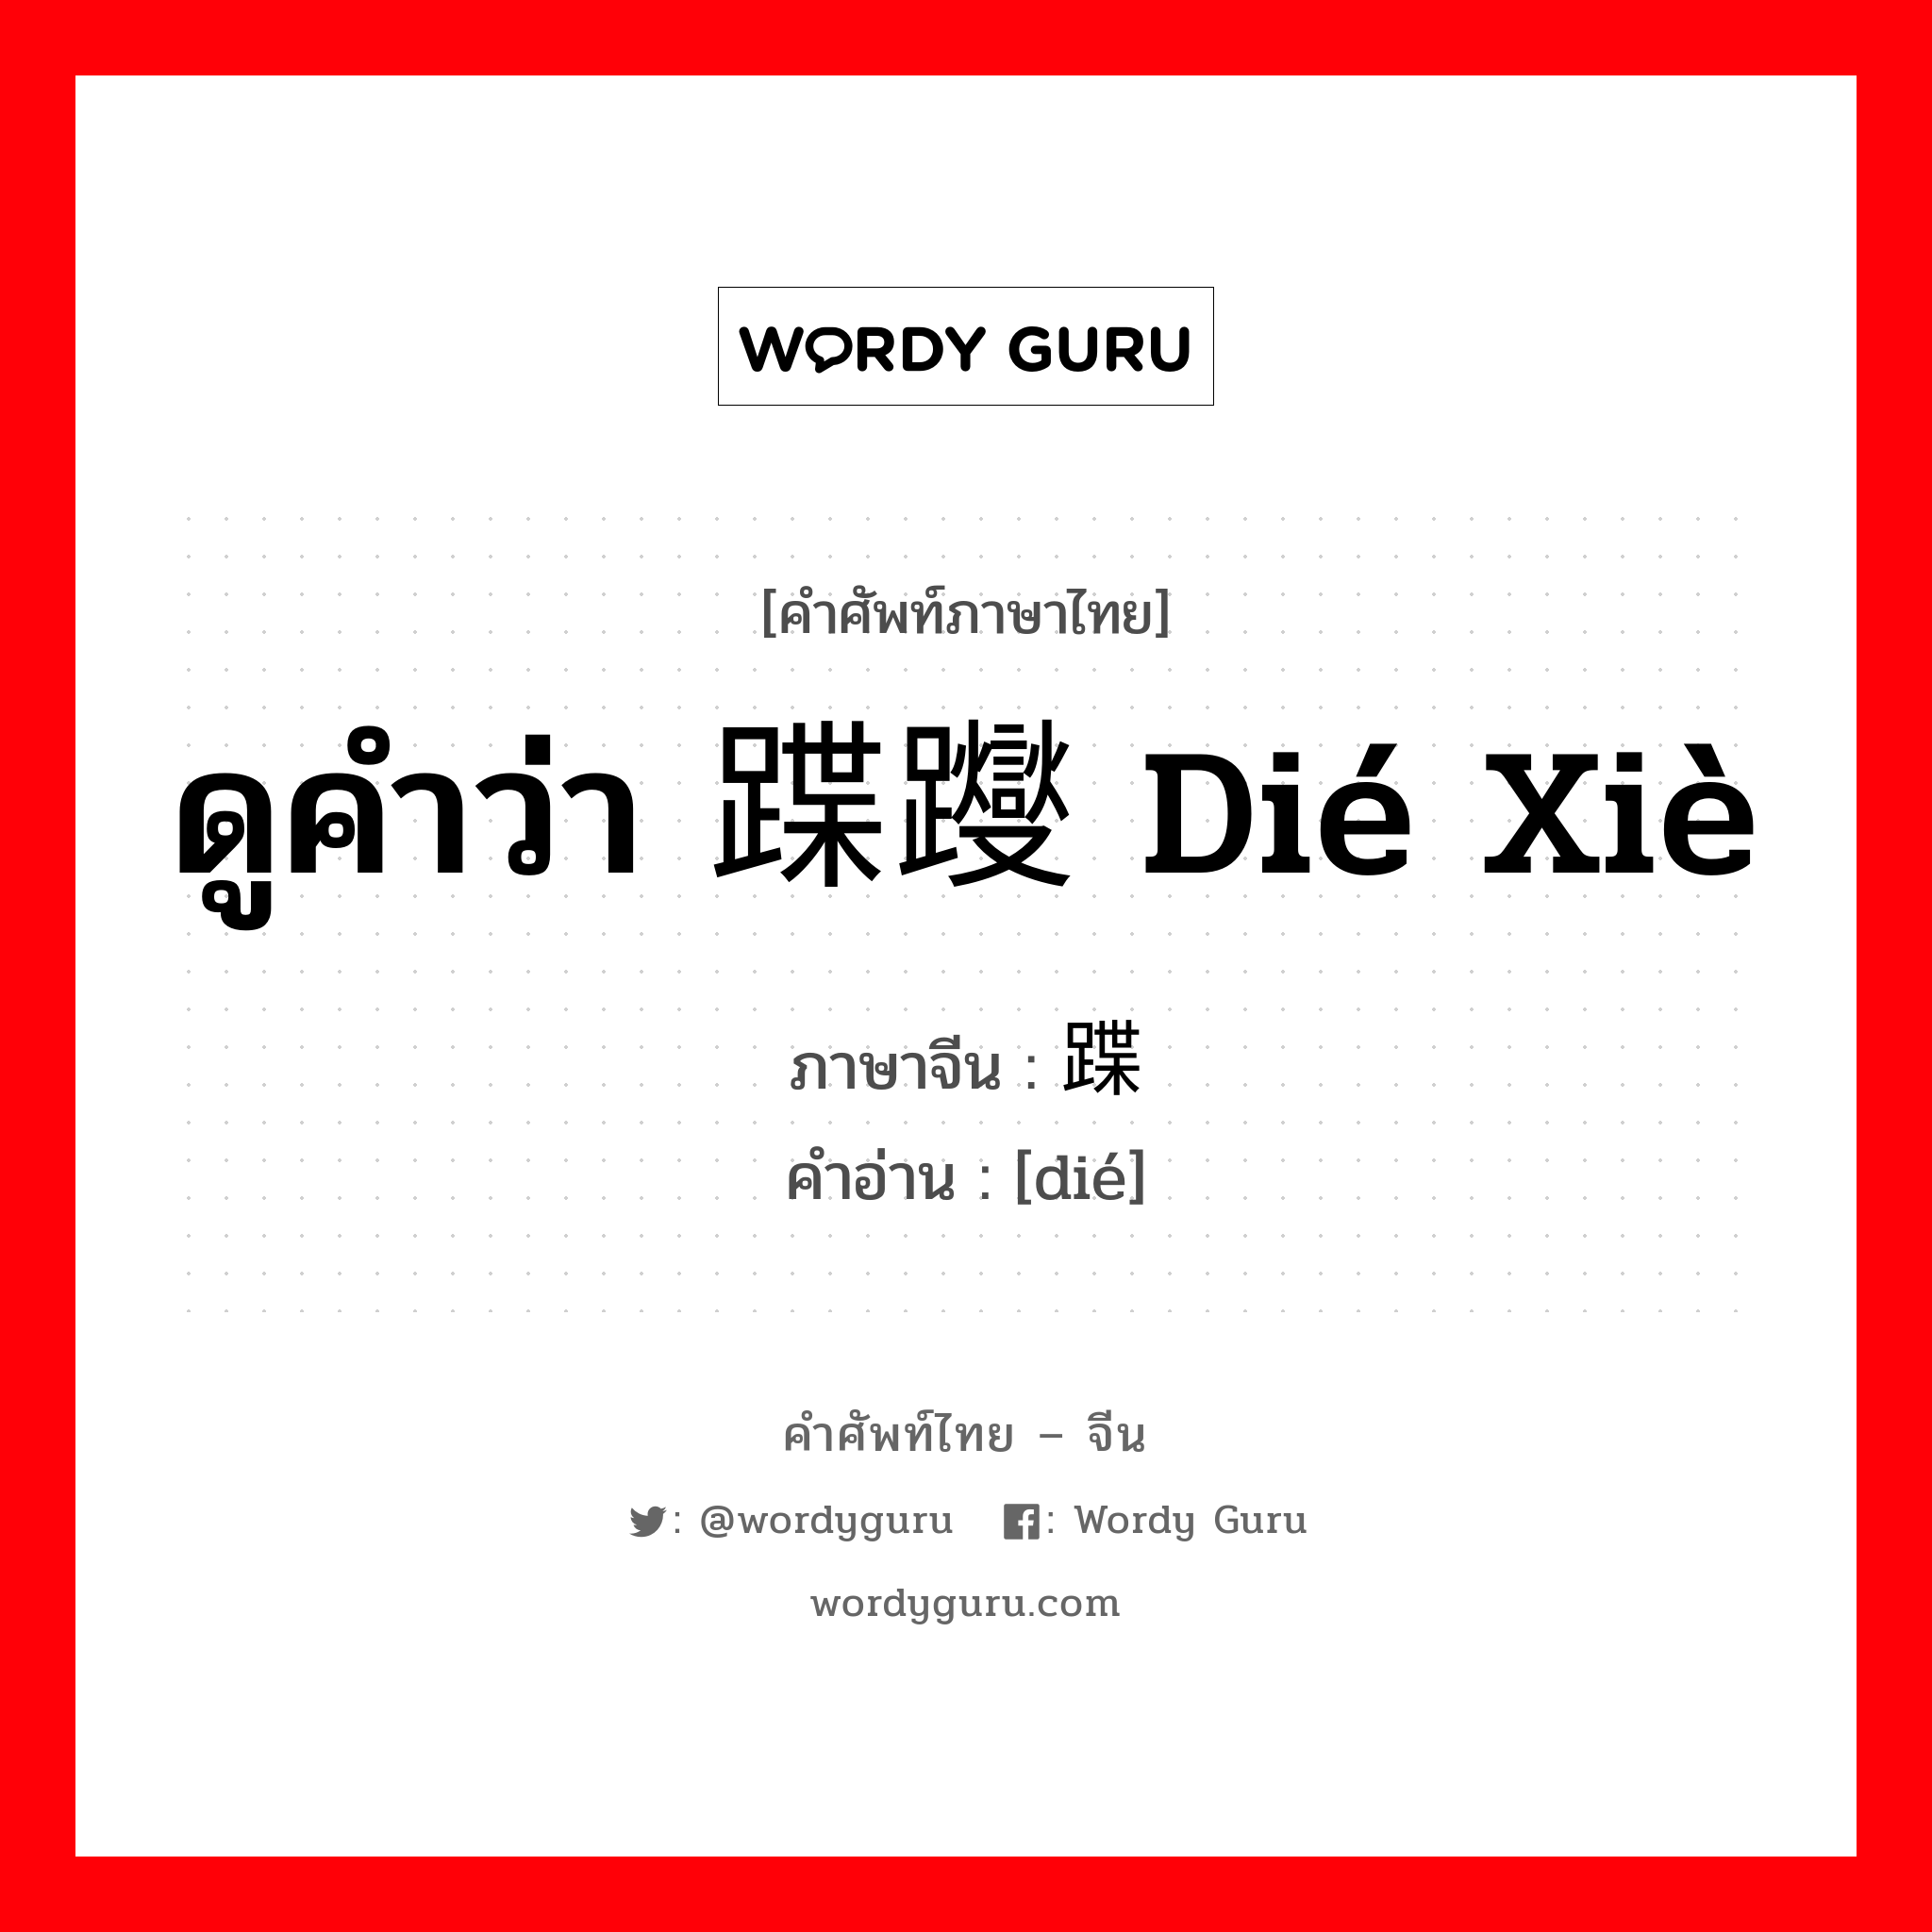 ดูคำว่า 蹀躞 dié xiè ภาษาจีนคืออะไร, คำศัพท์ภาษาไทย - จีน ดูคำว่า 蹀躞 dié xiè ภาษาจีน 蹀 คำอ่าน [dié]